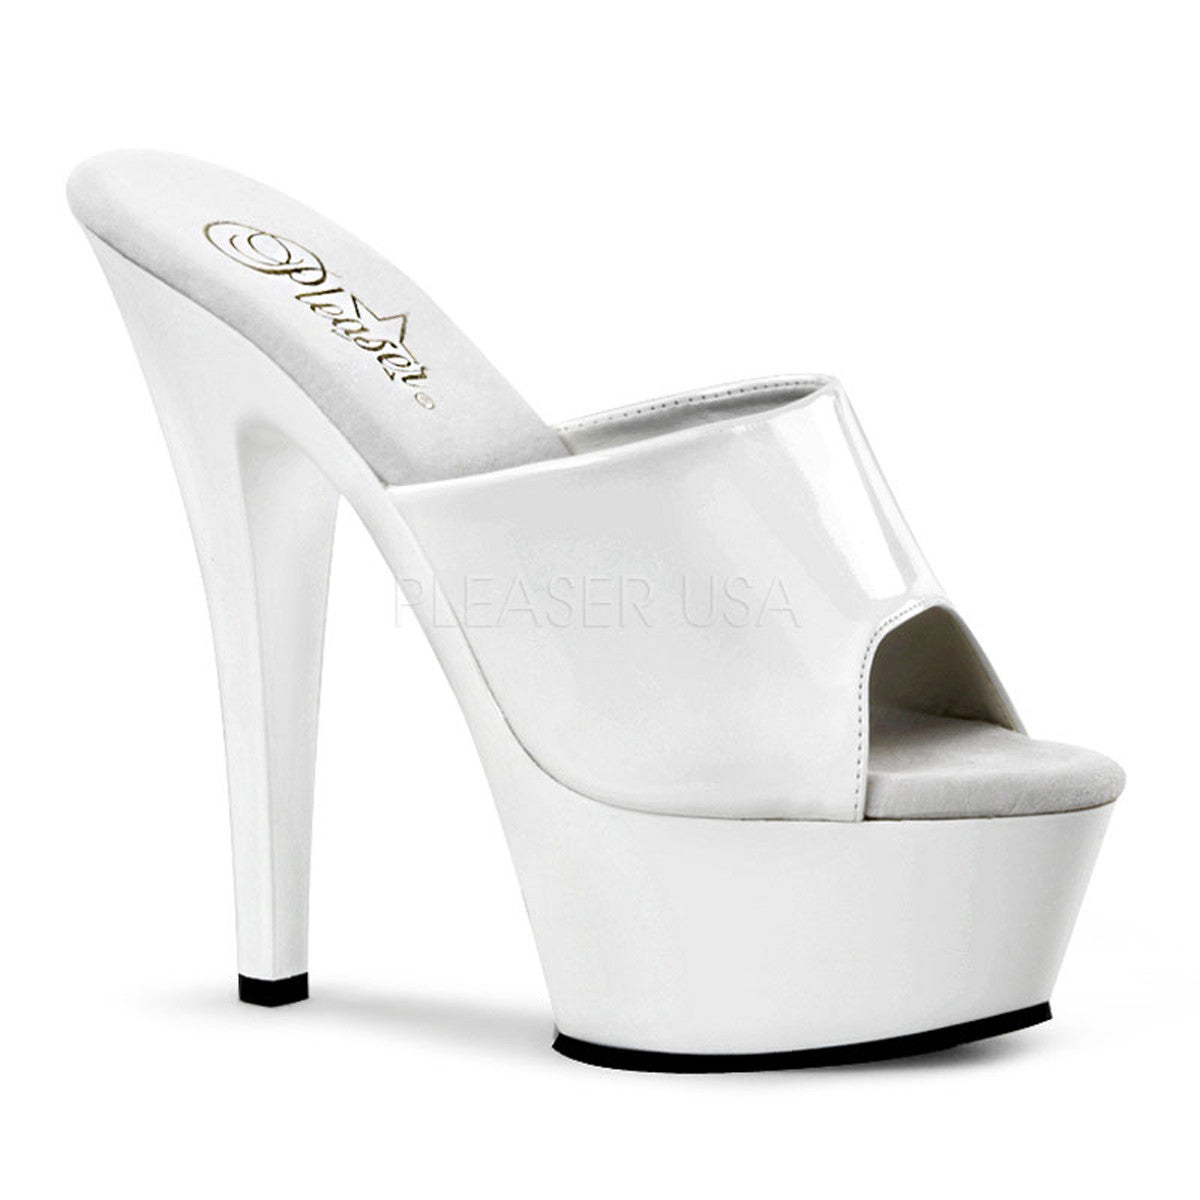 PLEASER KISS-201 White Platform Sandals - Shoecup.com